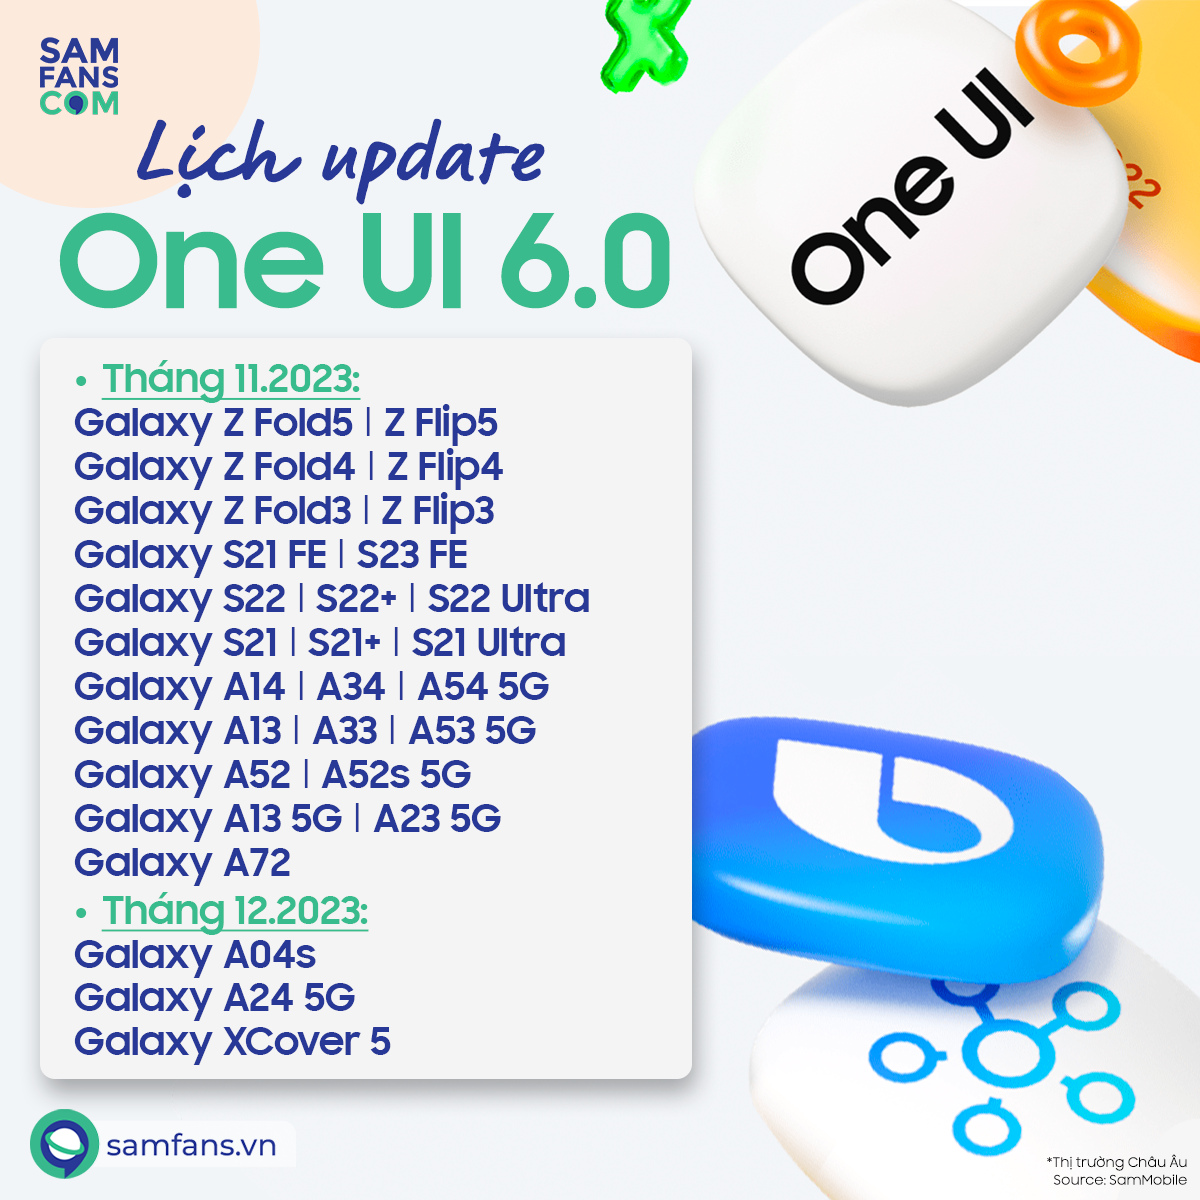 Lịch trình update One UI 6.0 chính thức cho các thiết bị Galaxy tại Châu Âu - 1699934352